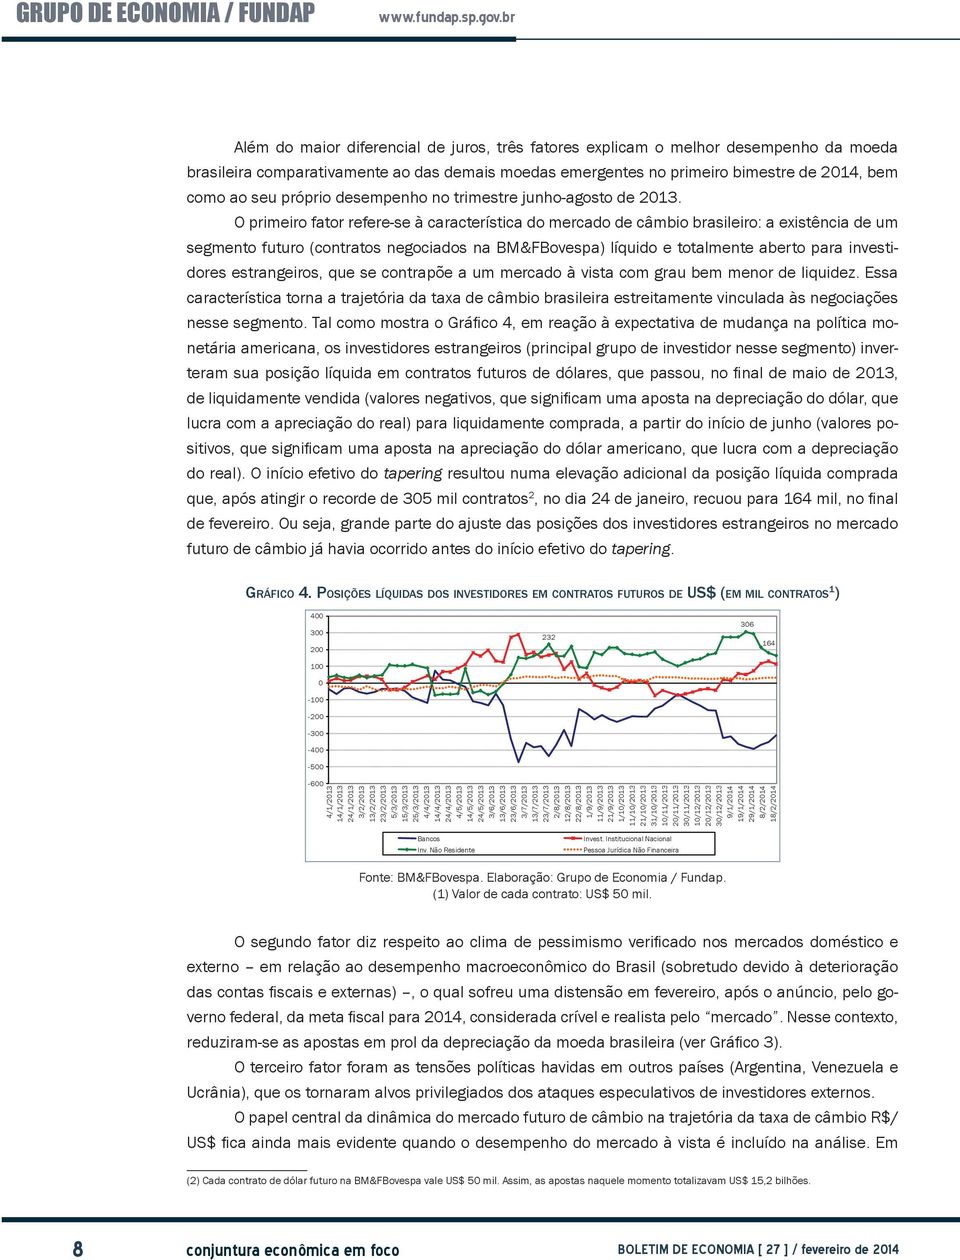 O primeiro fator refere-se à característica do mercado de câmbio brasileiro: a existência de um segmento futuro (contratos negociados na BM&FBovespa) líquido e totalmente aberto para investidores